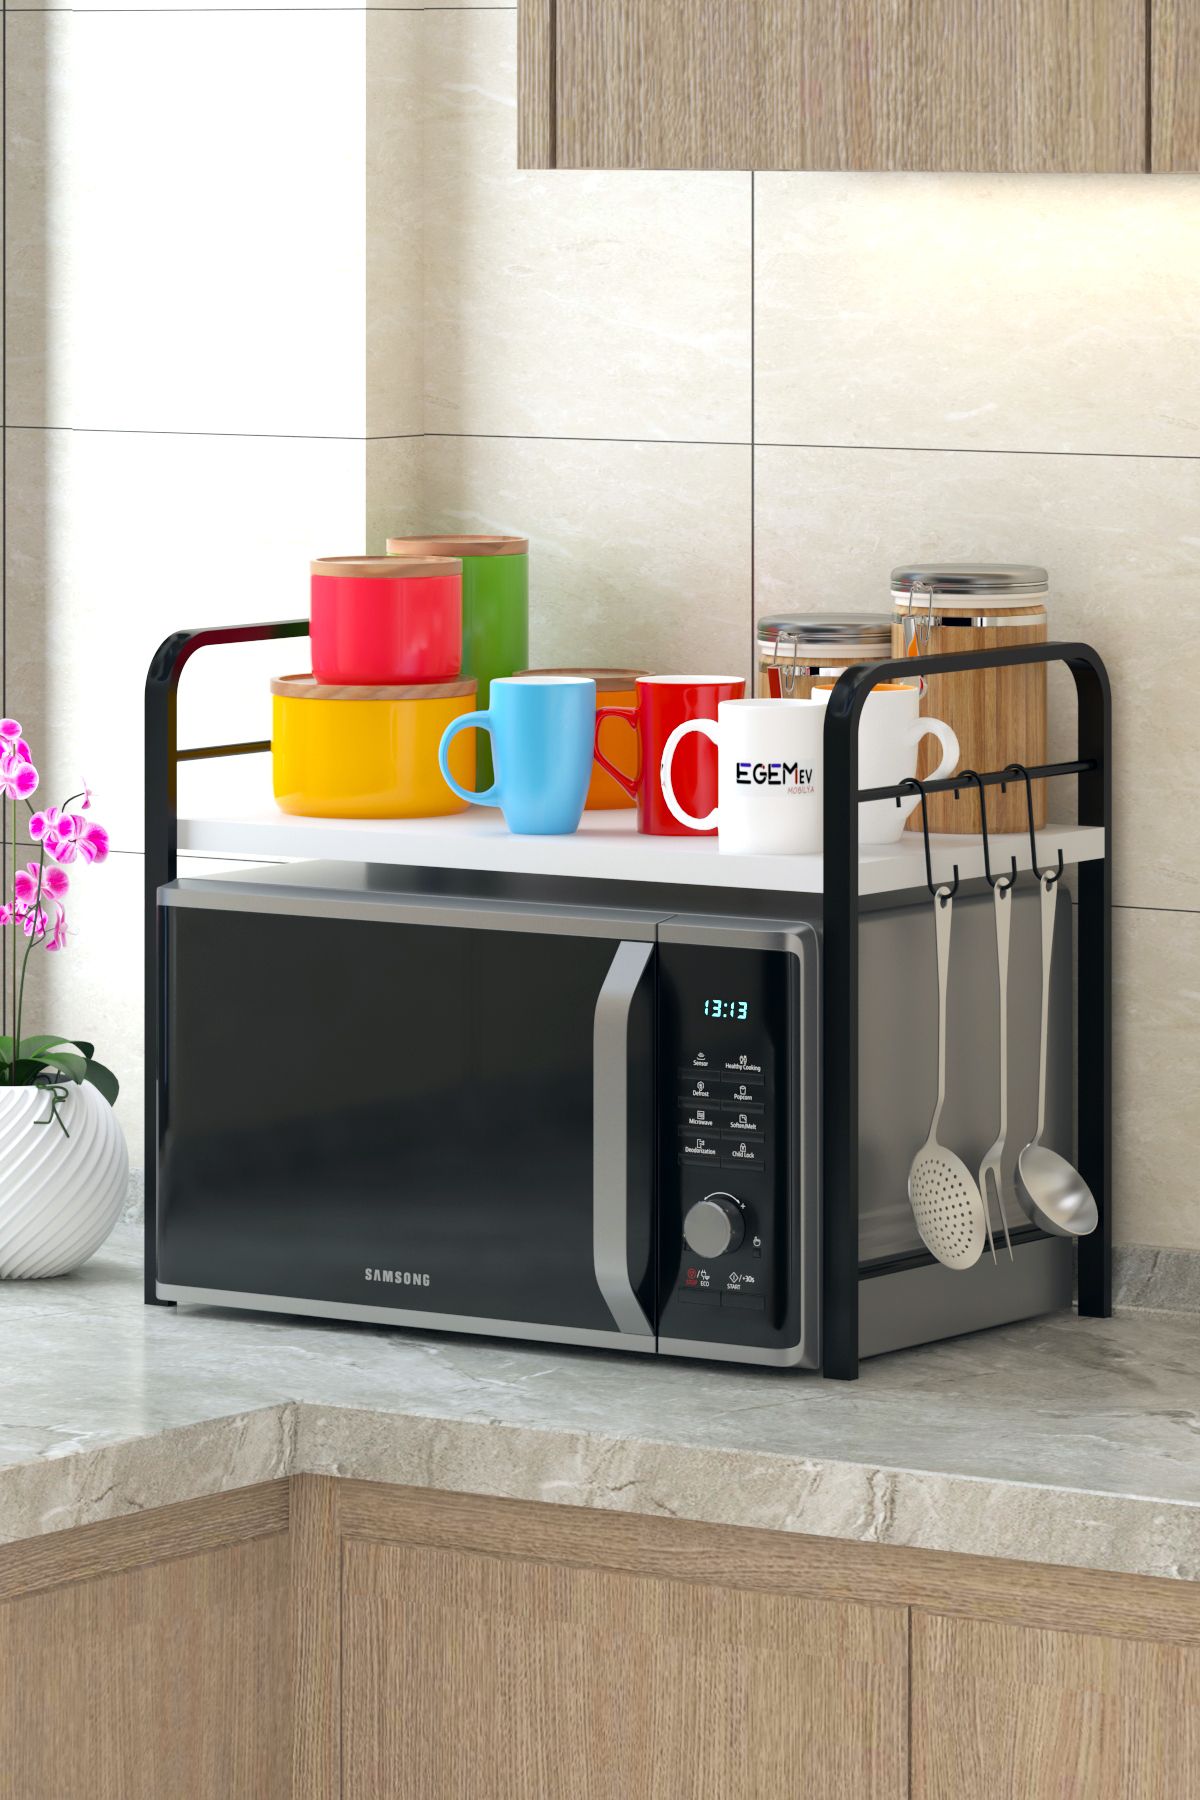 EGEMEV mutfak Tezgah Üstü Metal Raflı Mikrodalga Fırın Standı Çay Kahve makina Standı kavanozluk